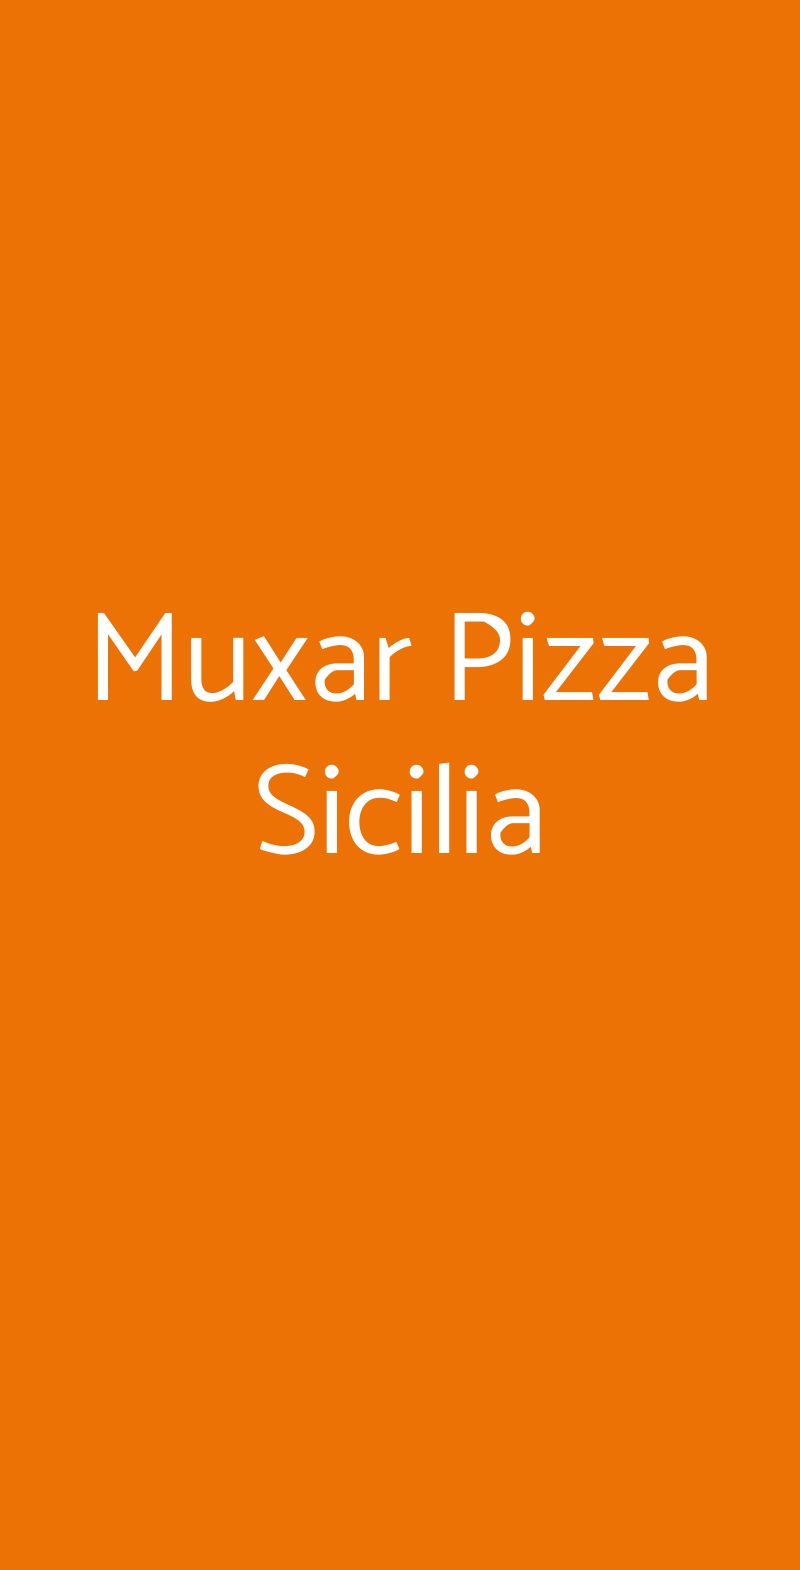 Muxar Pizza Sicilia Parma menù 1 pagina